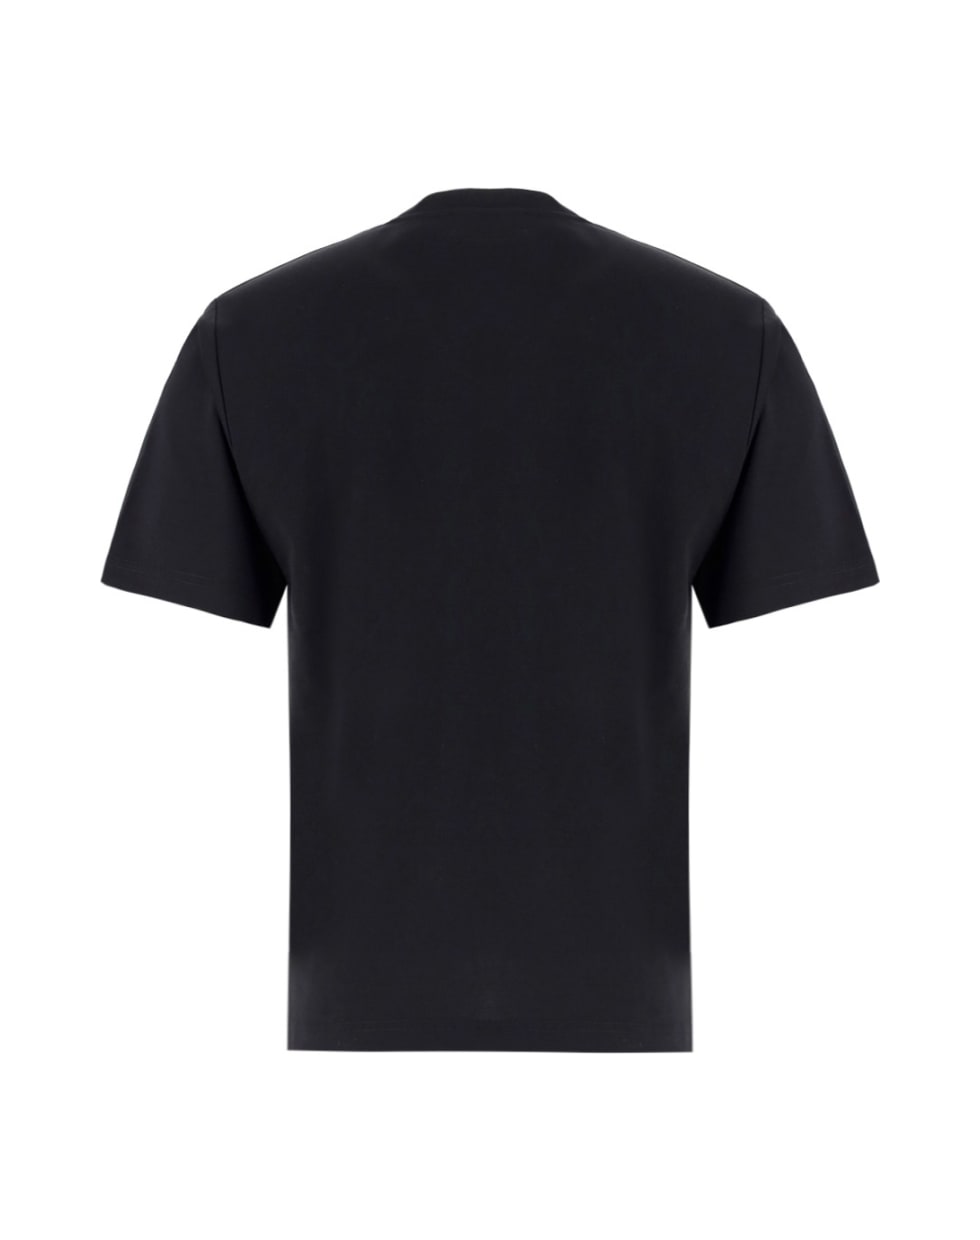 Dolce & Gabbana T-shirt - BLACK